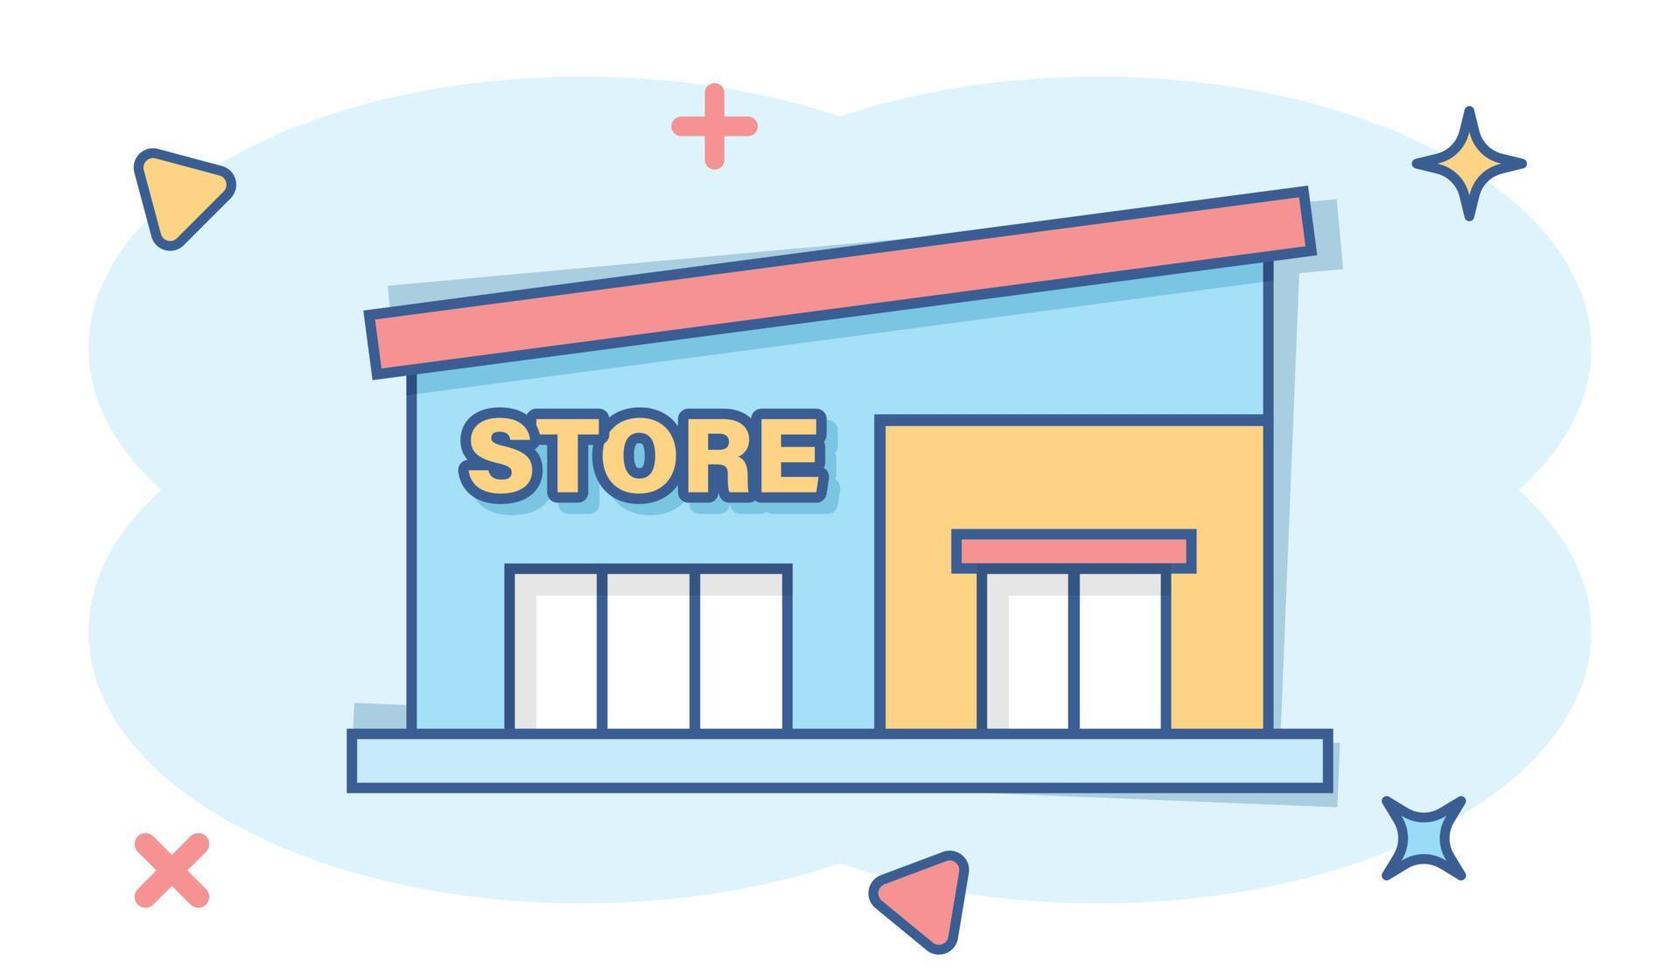 Mall-Ikone im Comic-Stil. Cartoon-Vektor-Illustration auf weißem, isoliertem Hintergrund speichern. Shop-Splash-Effekt-Geschäftskonzept. vektor